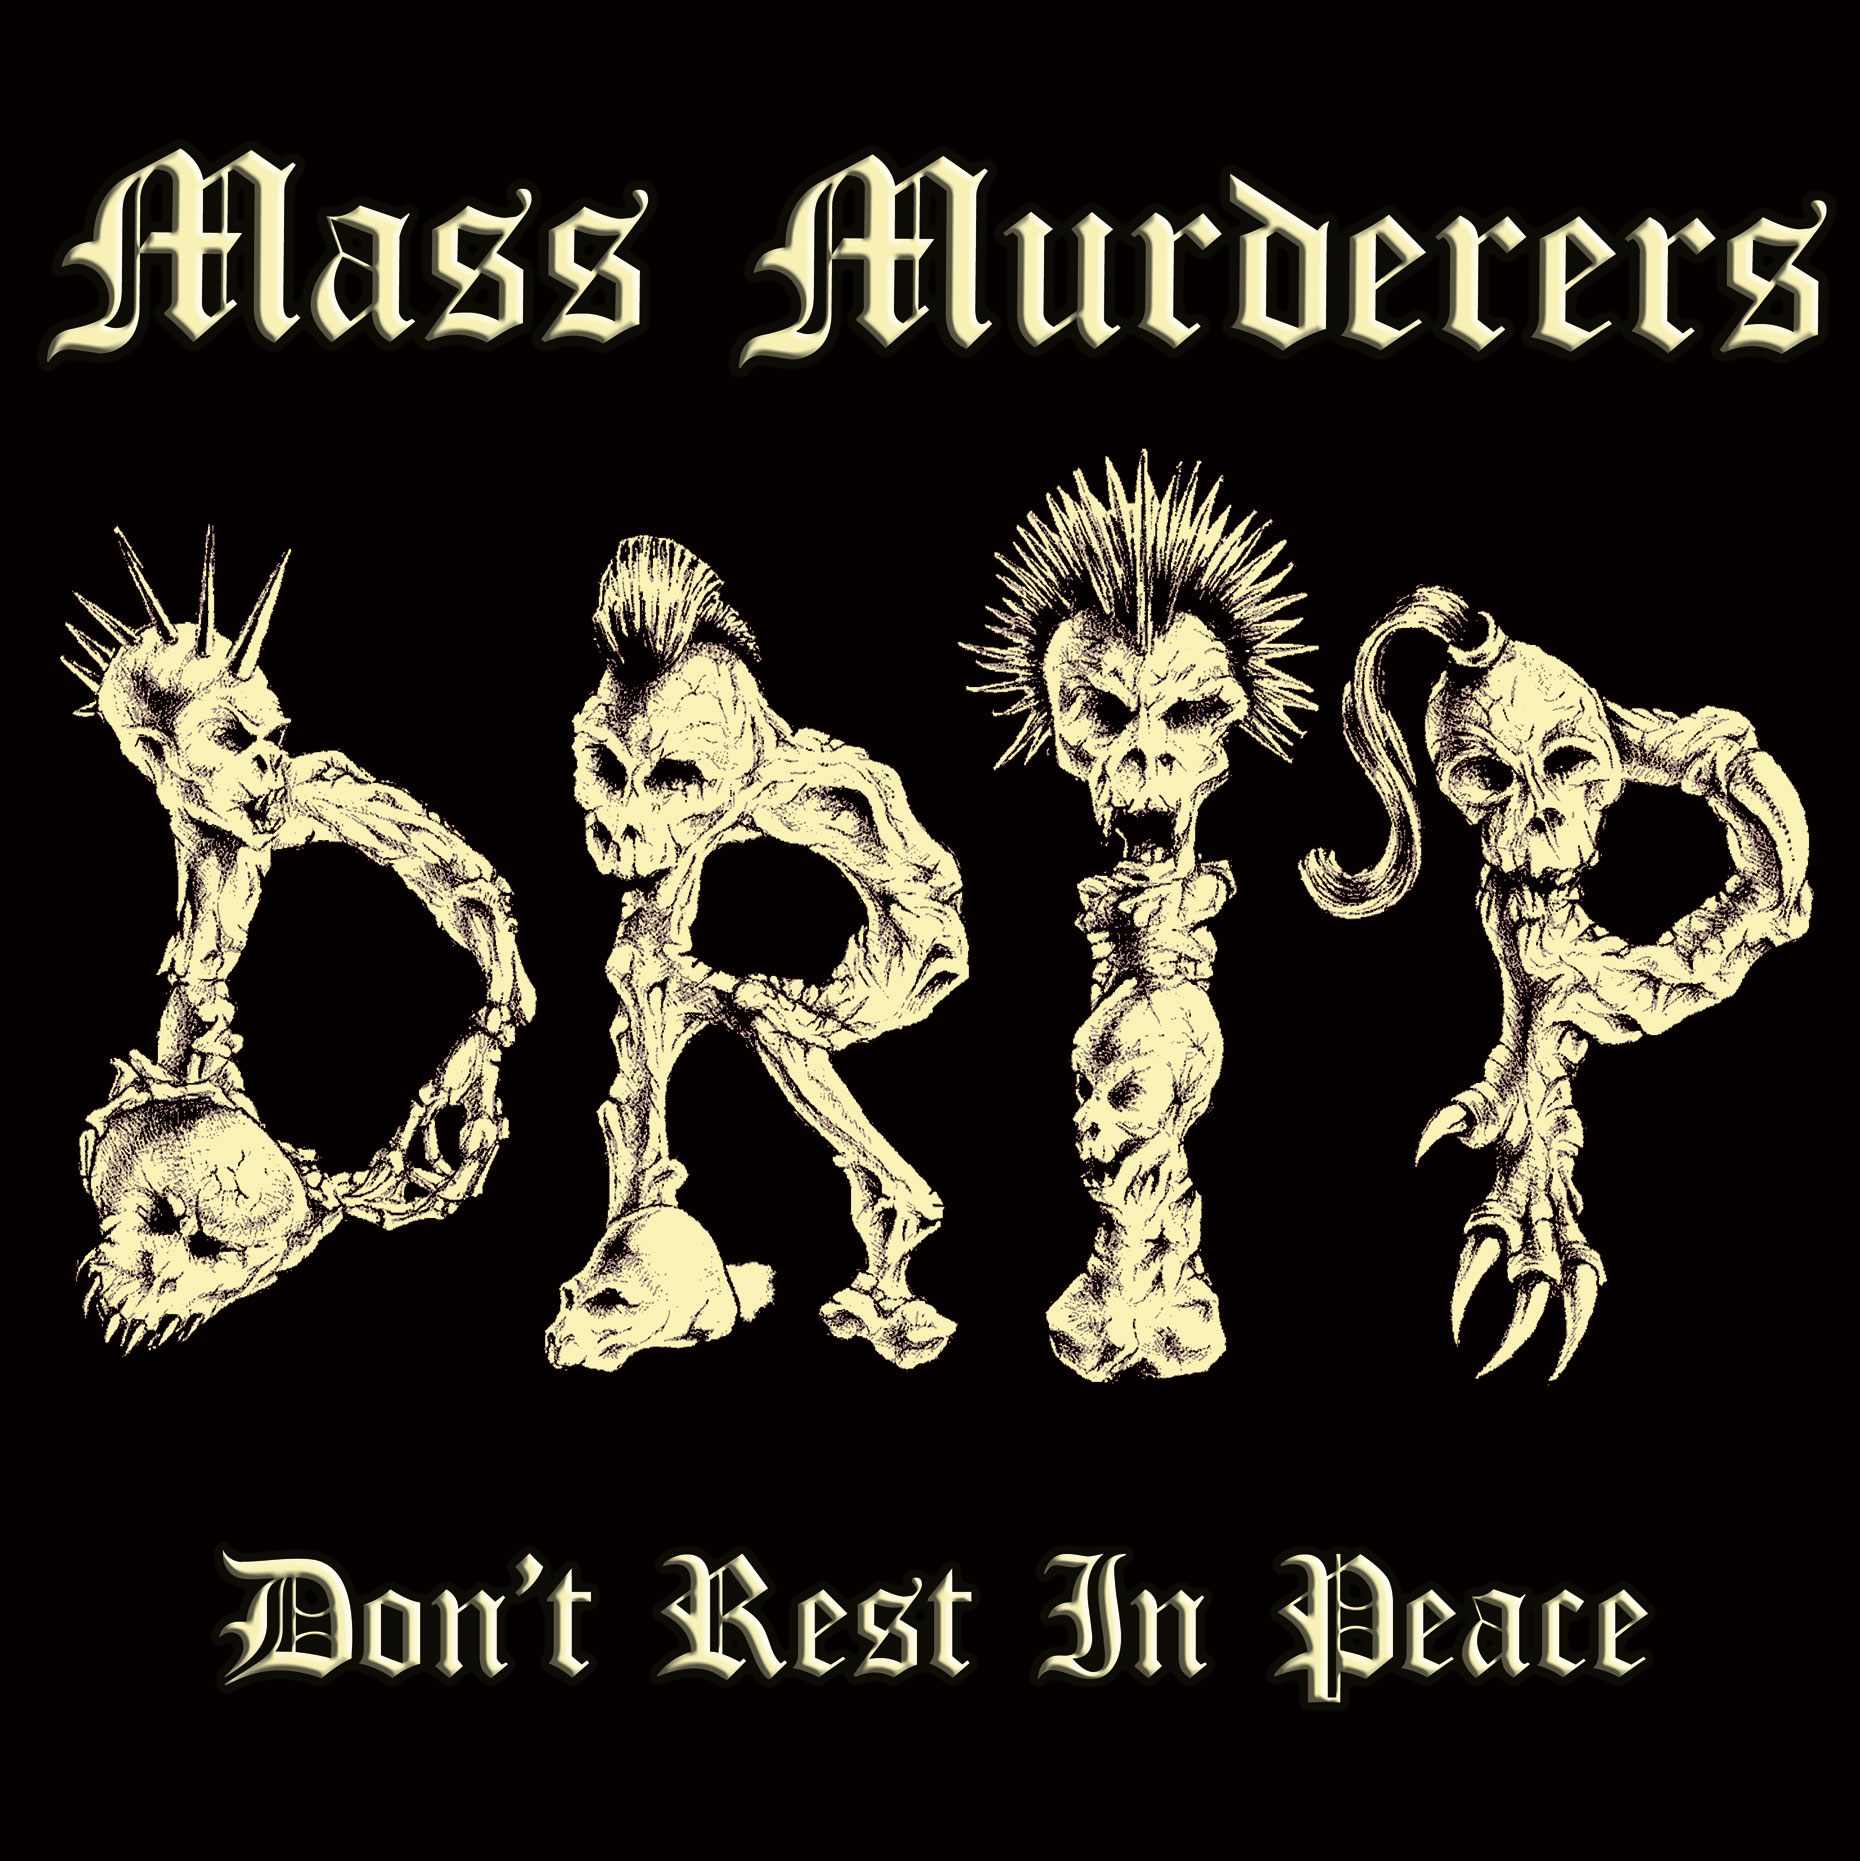 MASS MURDERERS "DRIP" - 33T